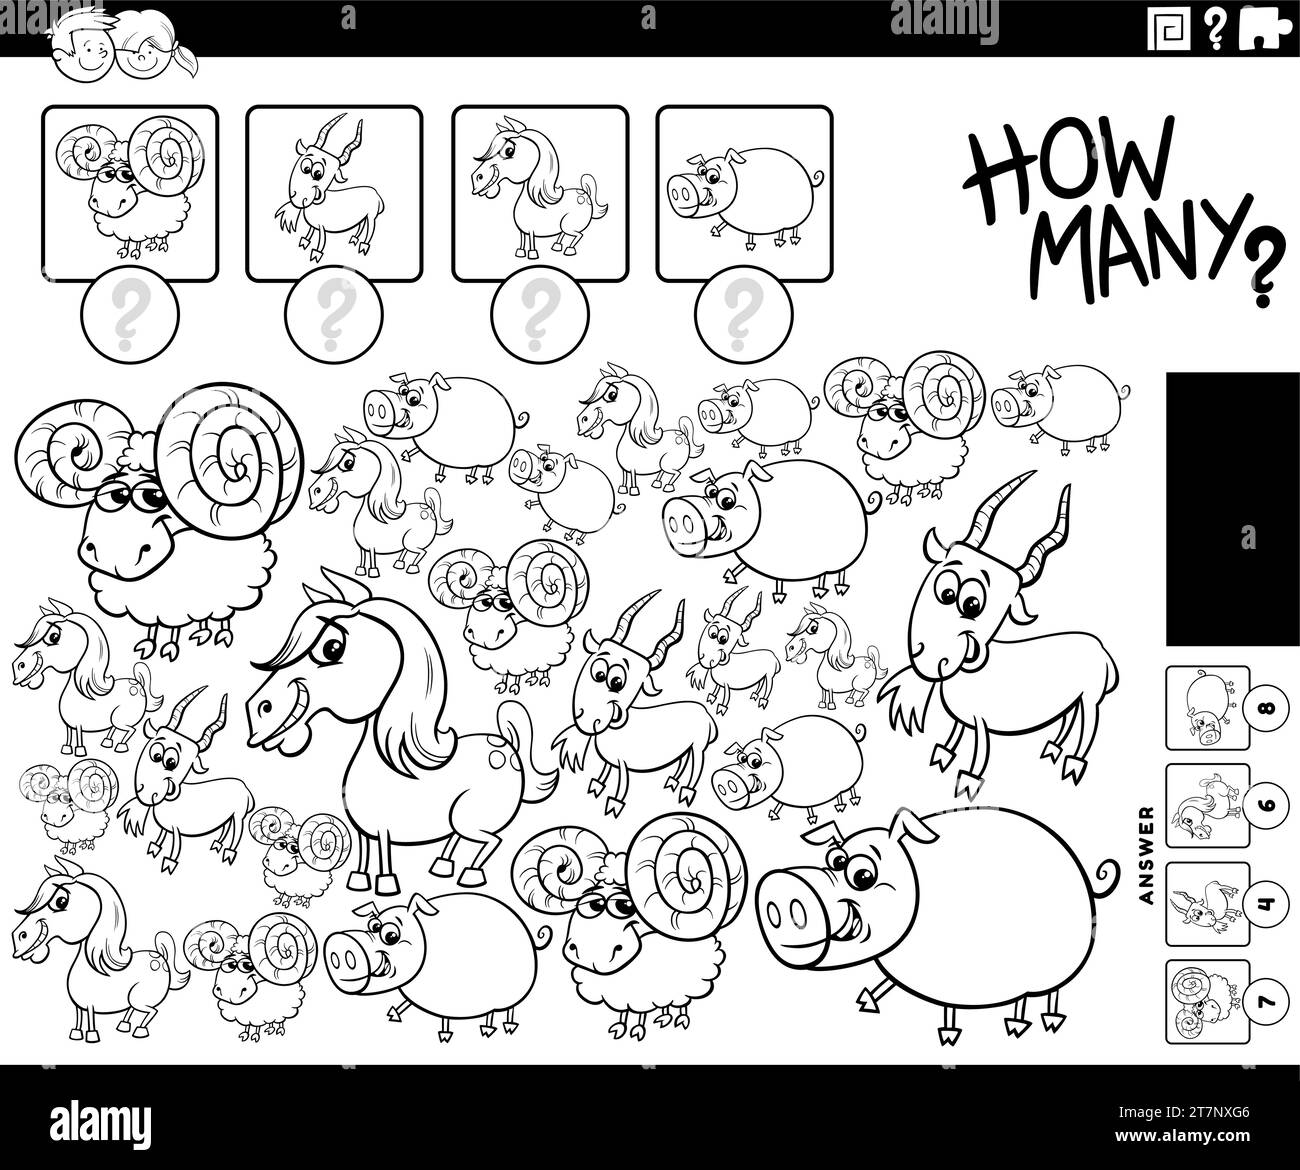 Illustration en noir et blanc de l'activité éducative de comptage avec la page à colorier des personnages d'animaux de ferme de dessin animé Illustration de Vecteur